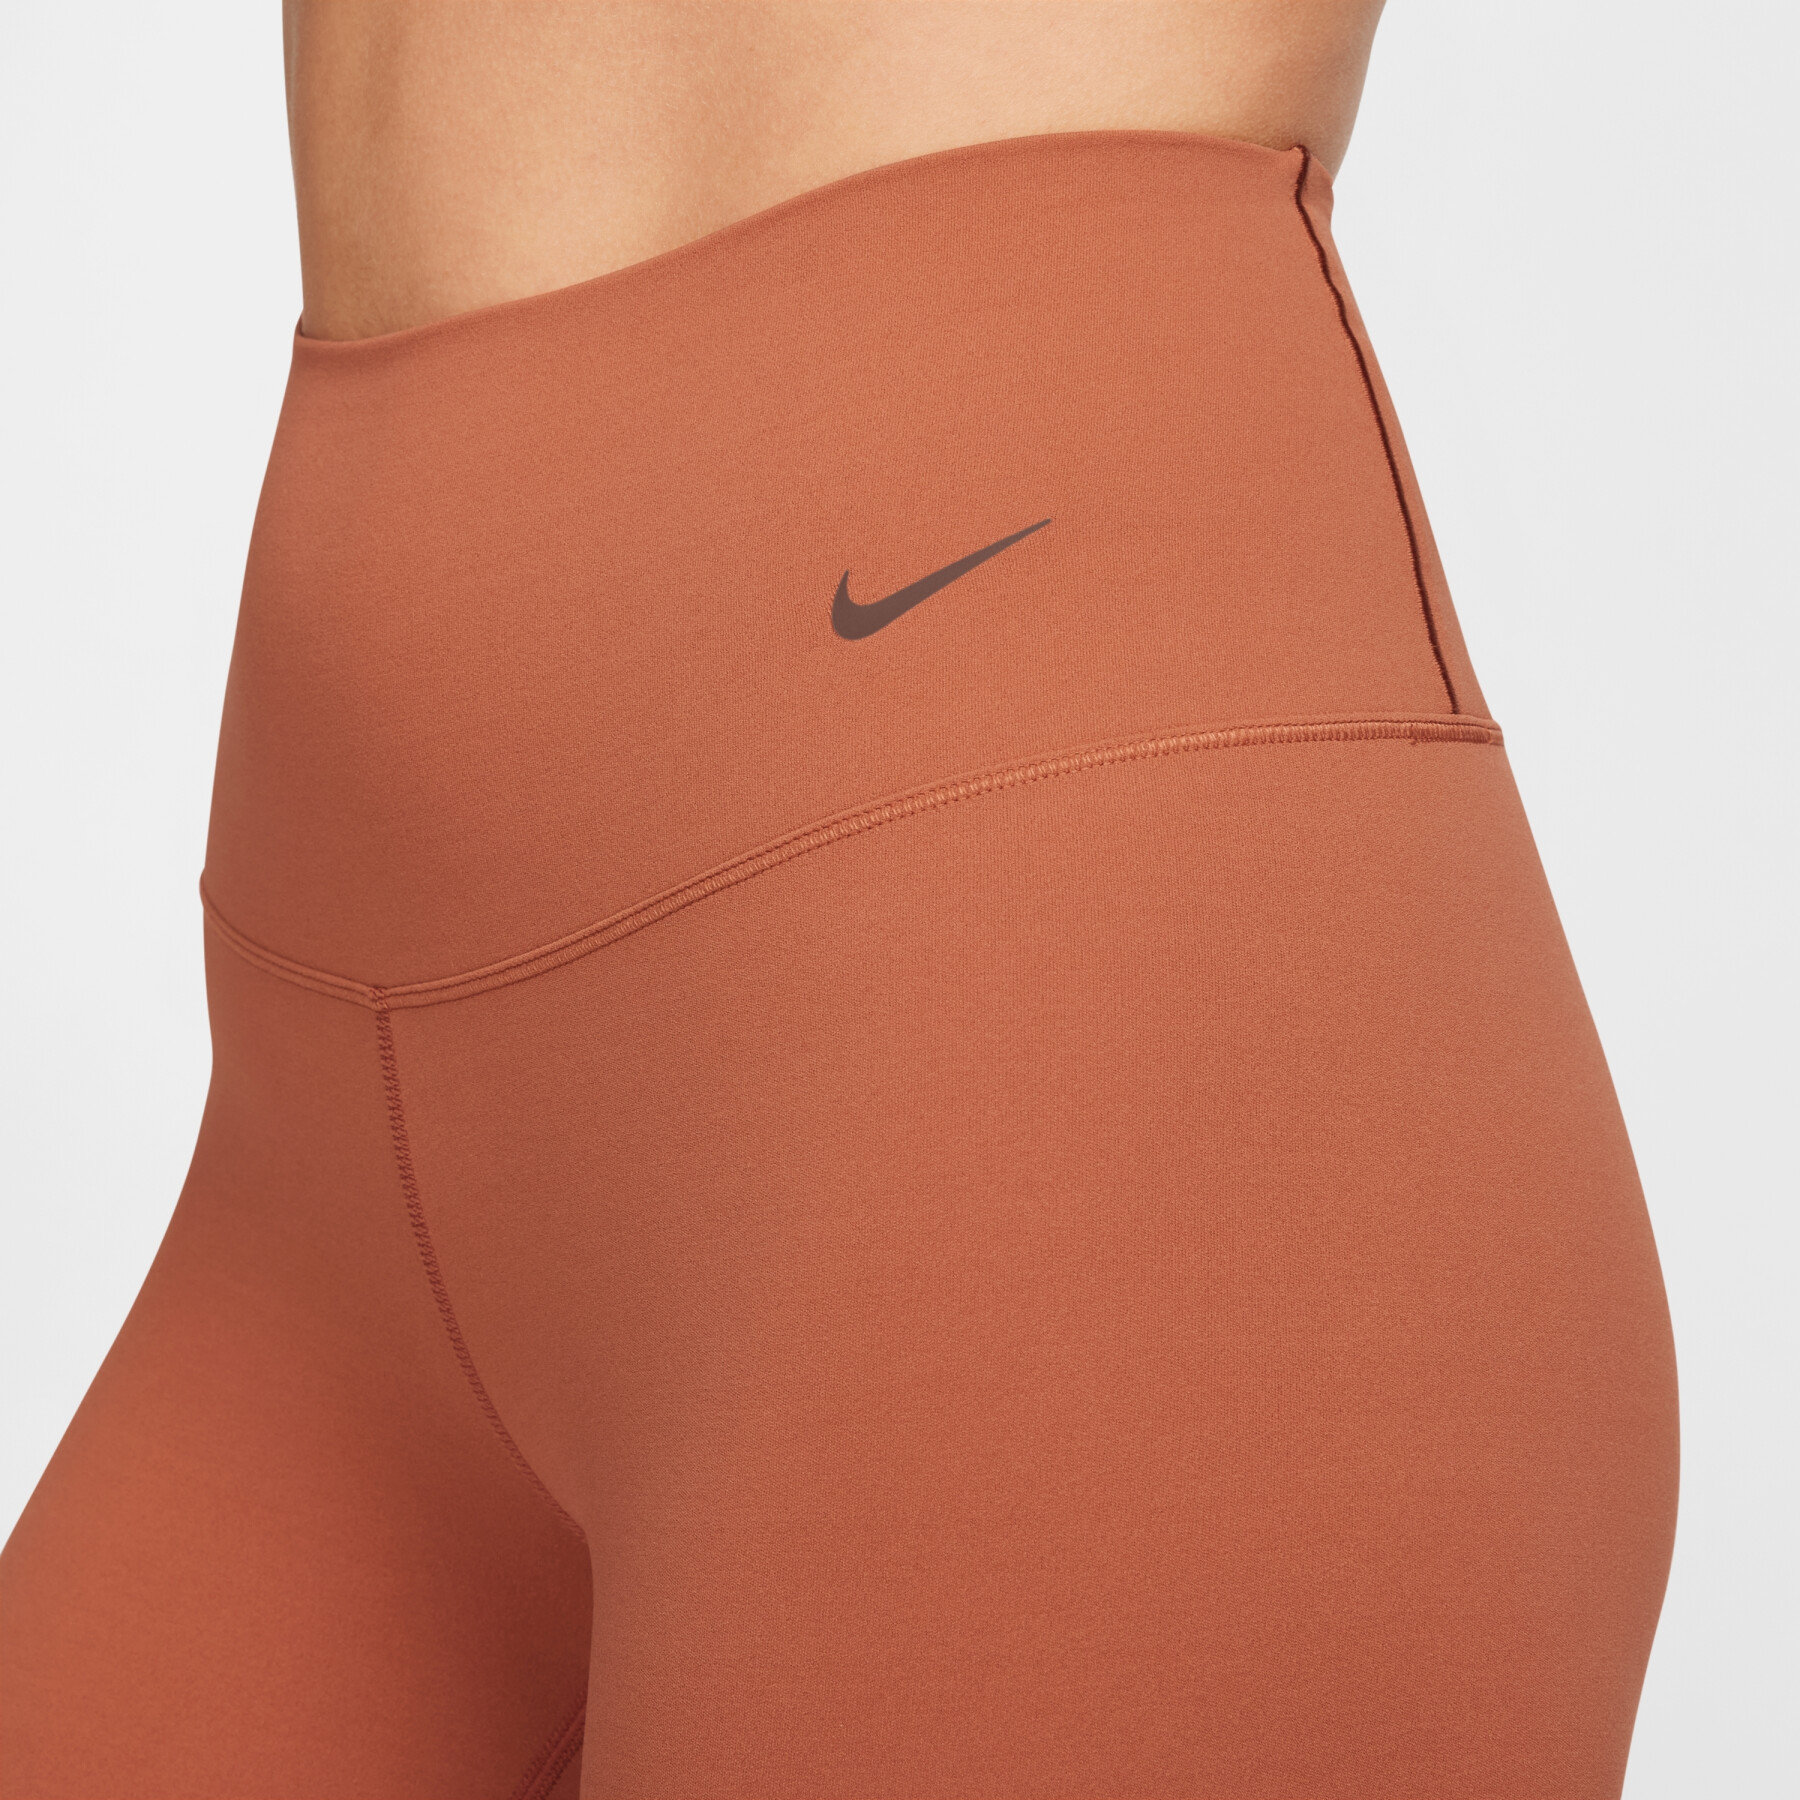 Leggings de cintura alta 7/8 para mulher com suporte leve Nike Zenvy